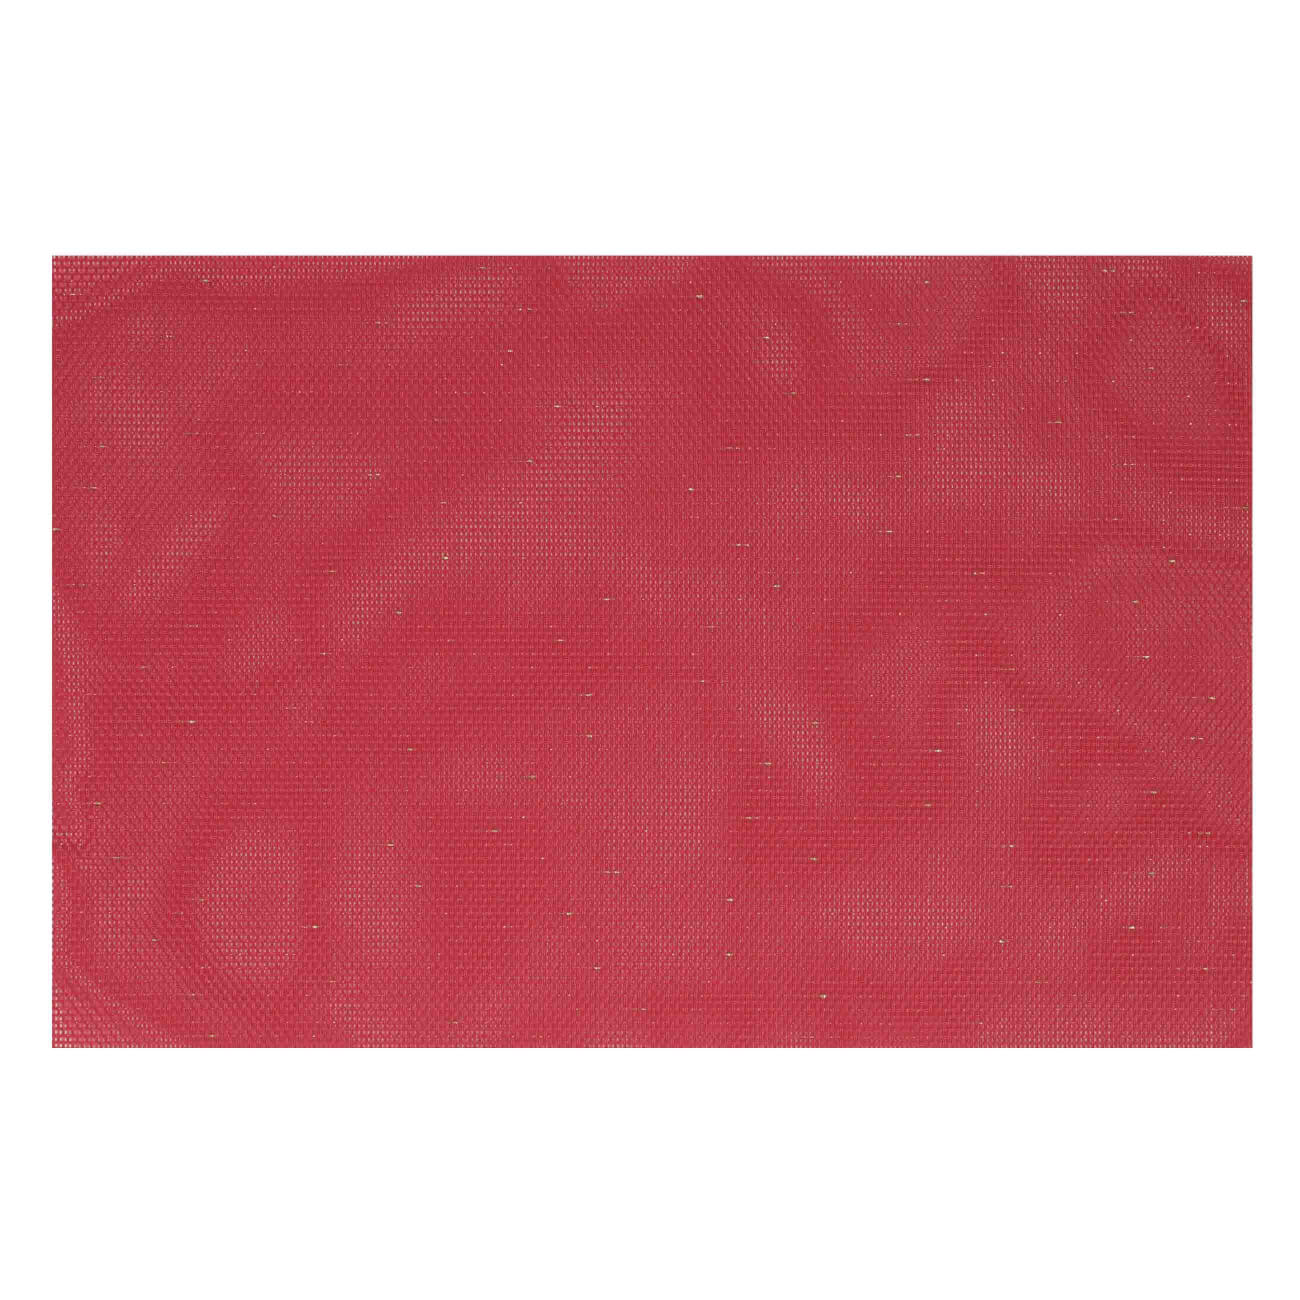 Салфетка под приборы, 30х45 см, ПВХ/полиэстер, прямоугольная, красная, Solid изображение № 1